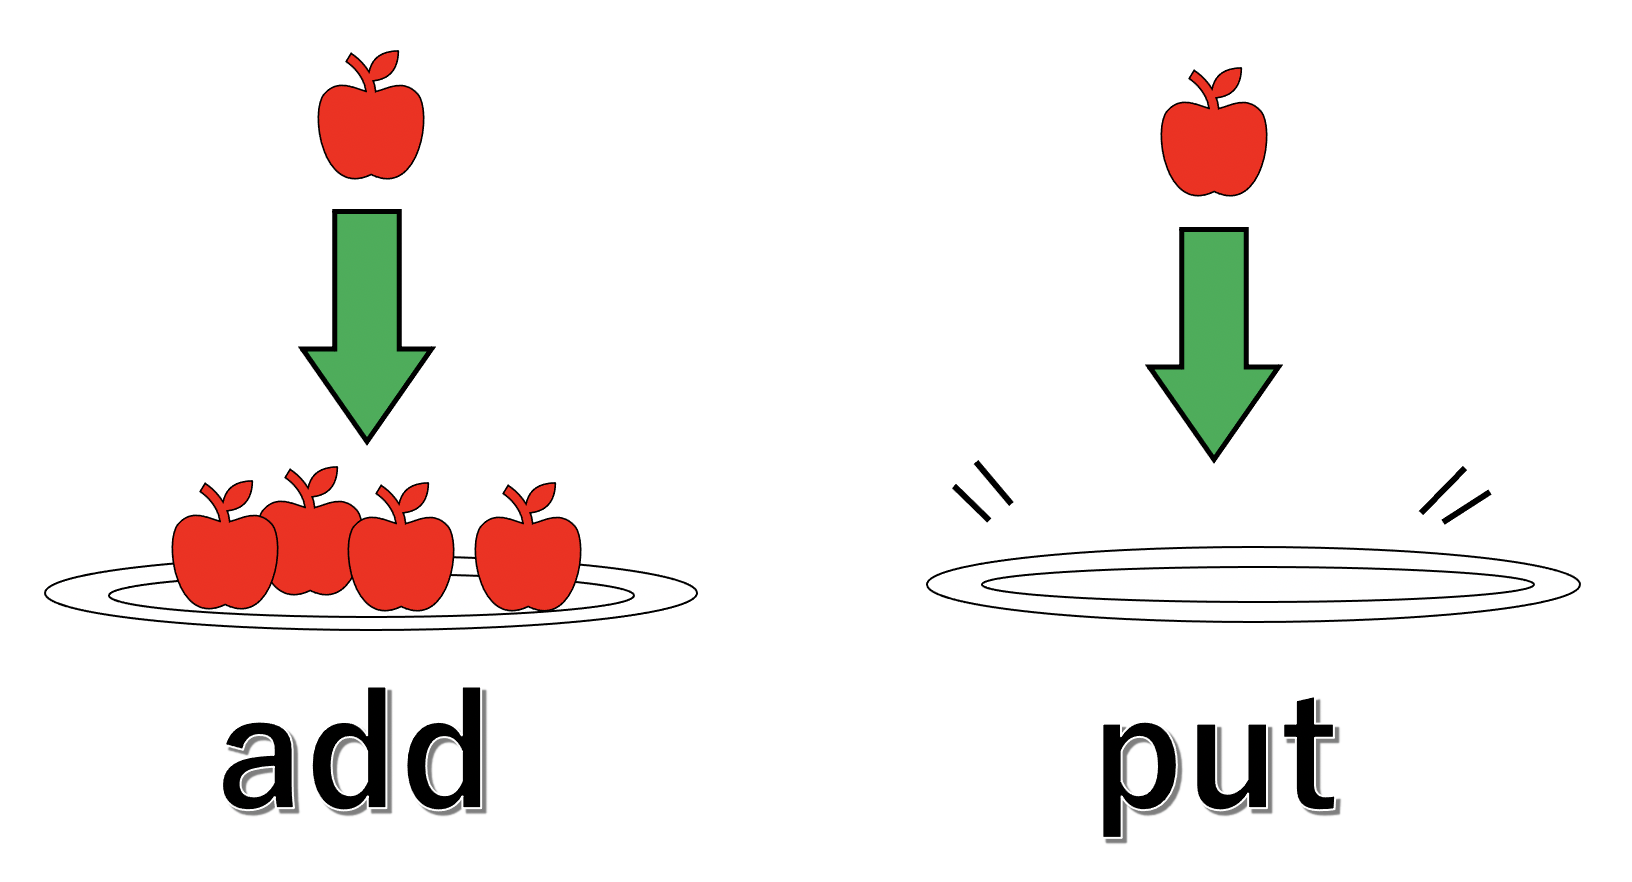 addとputをお皿とりんごで表した図